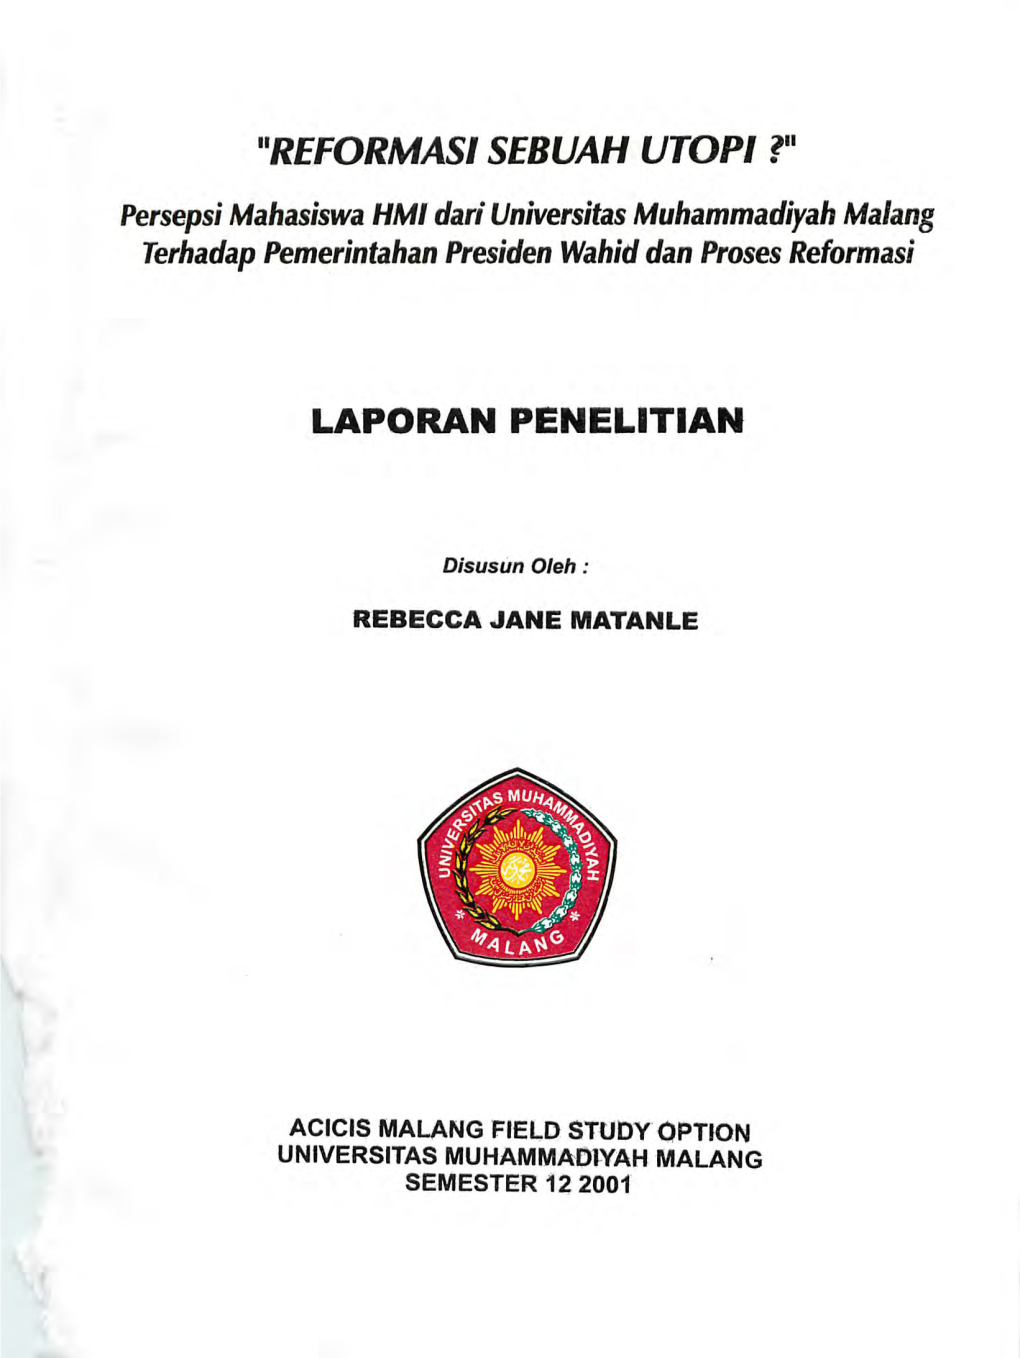 Persepsi Mahasiswa HMI Dari Universitas Muhammadiyah Malang Terhadap Pemerintahan Presiden Wahid Dan Proses Reformasi